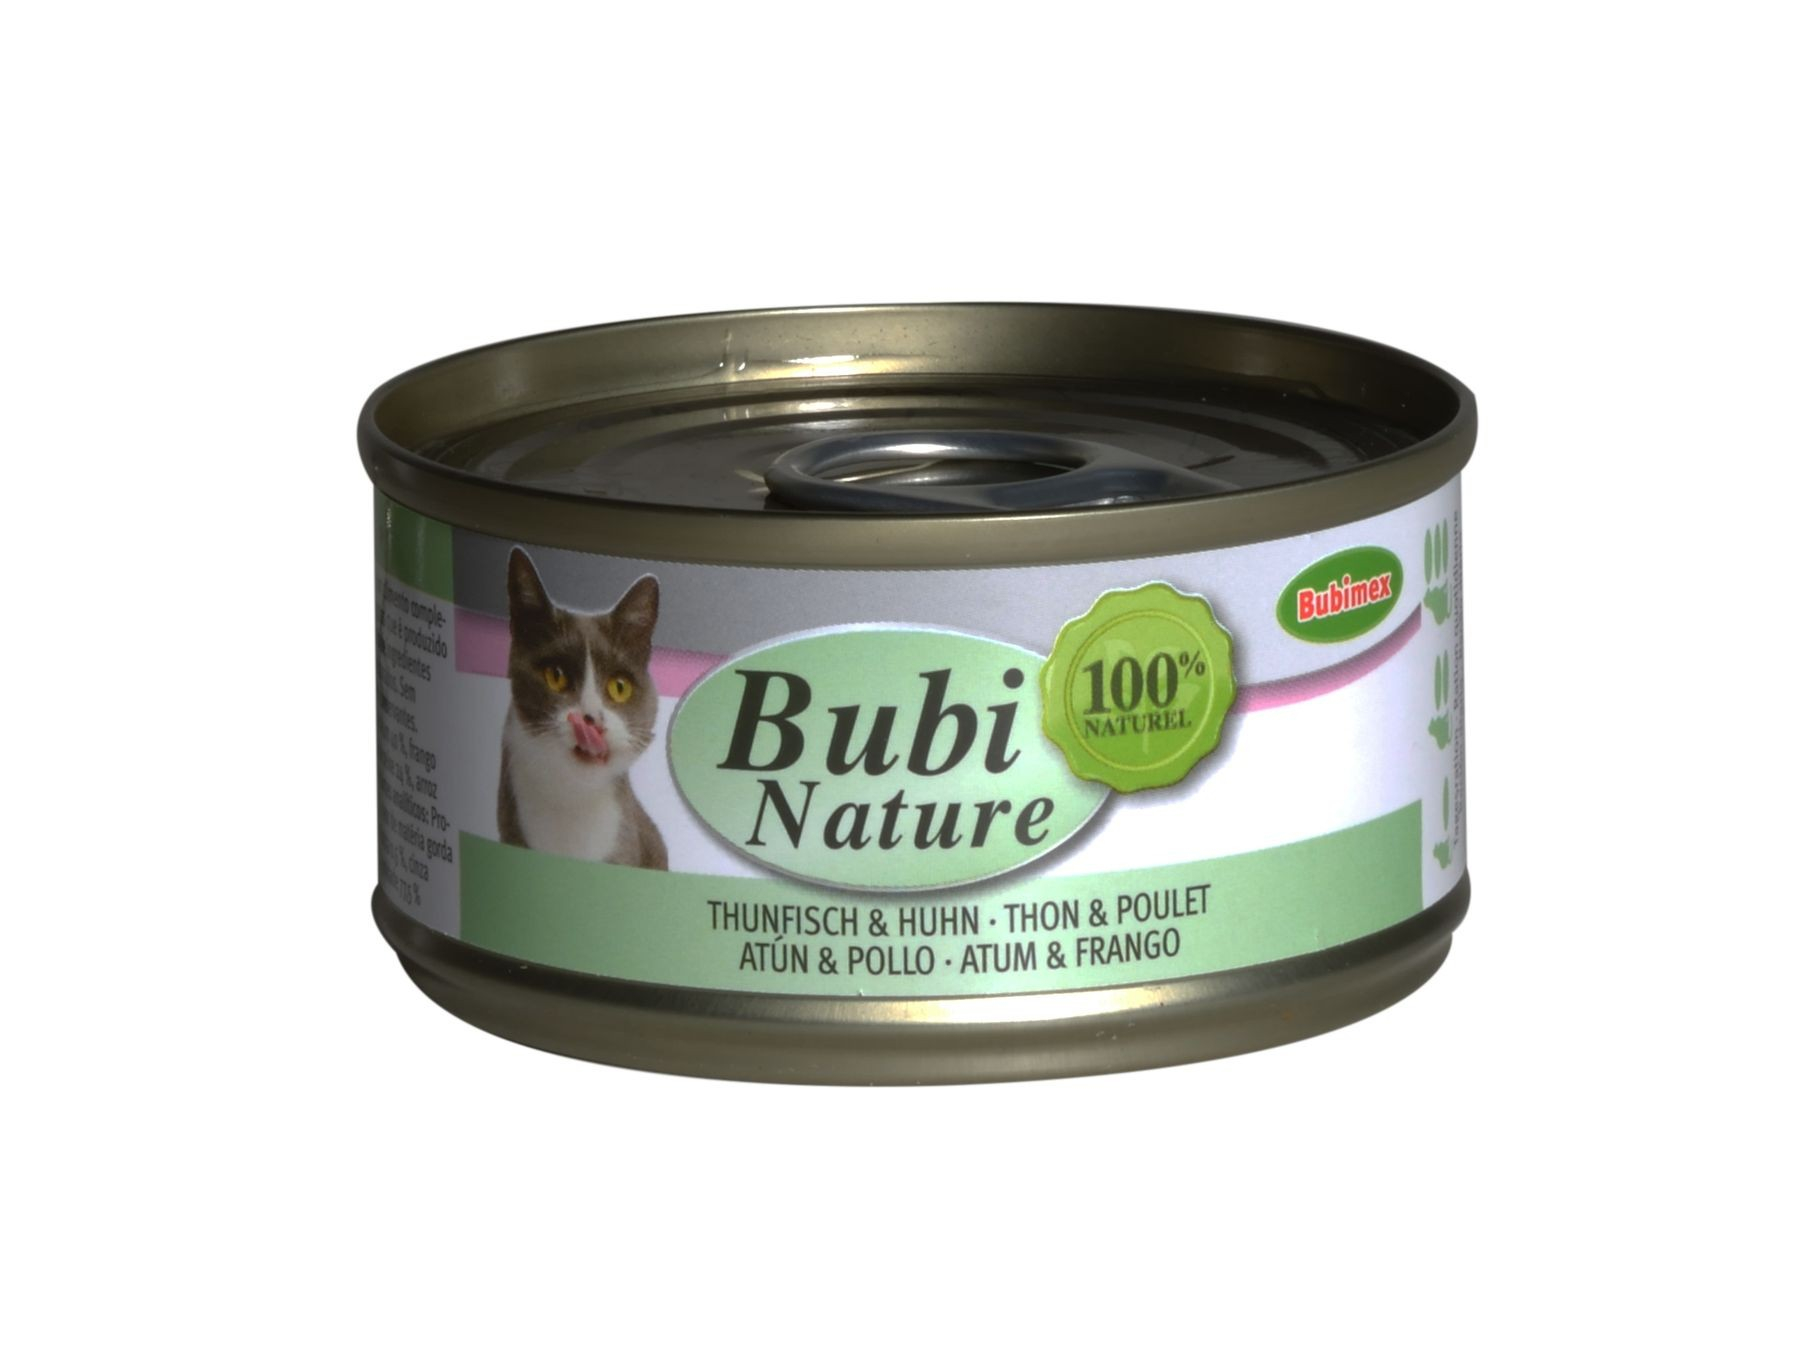 BUBIMEX Bubi Nature mit Thunfisch & Huhn für Katzen